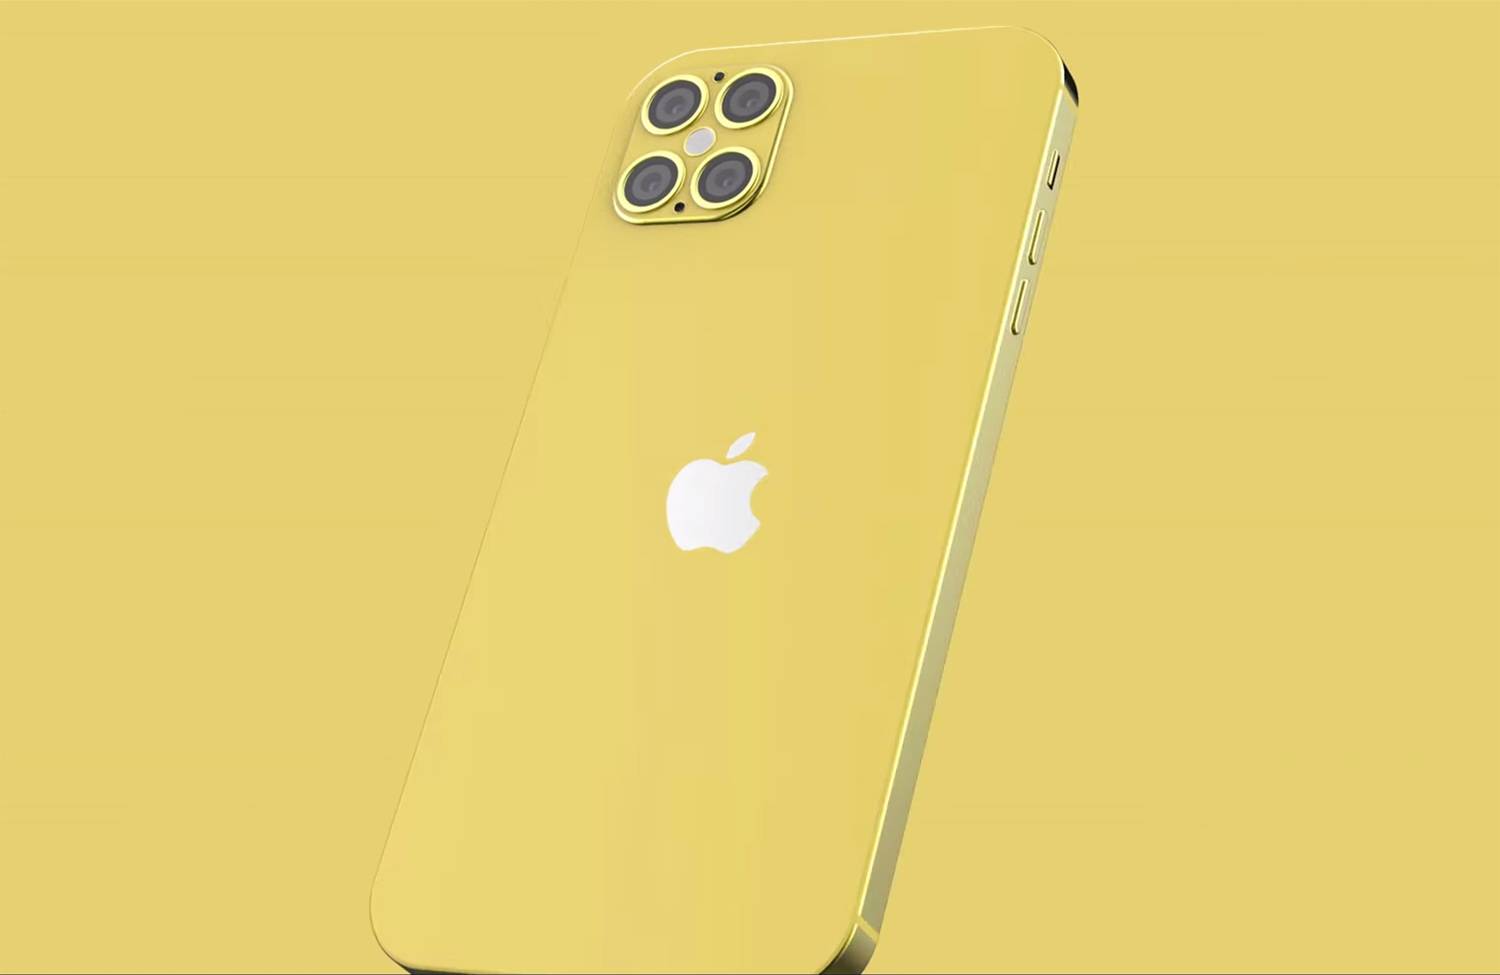 Appleмасштабный редизайн iPhone 12 выглядит невероятно в этом новом видео.